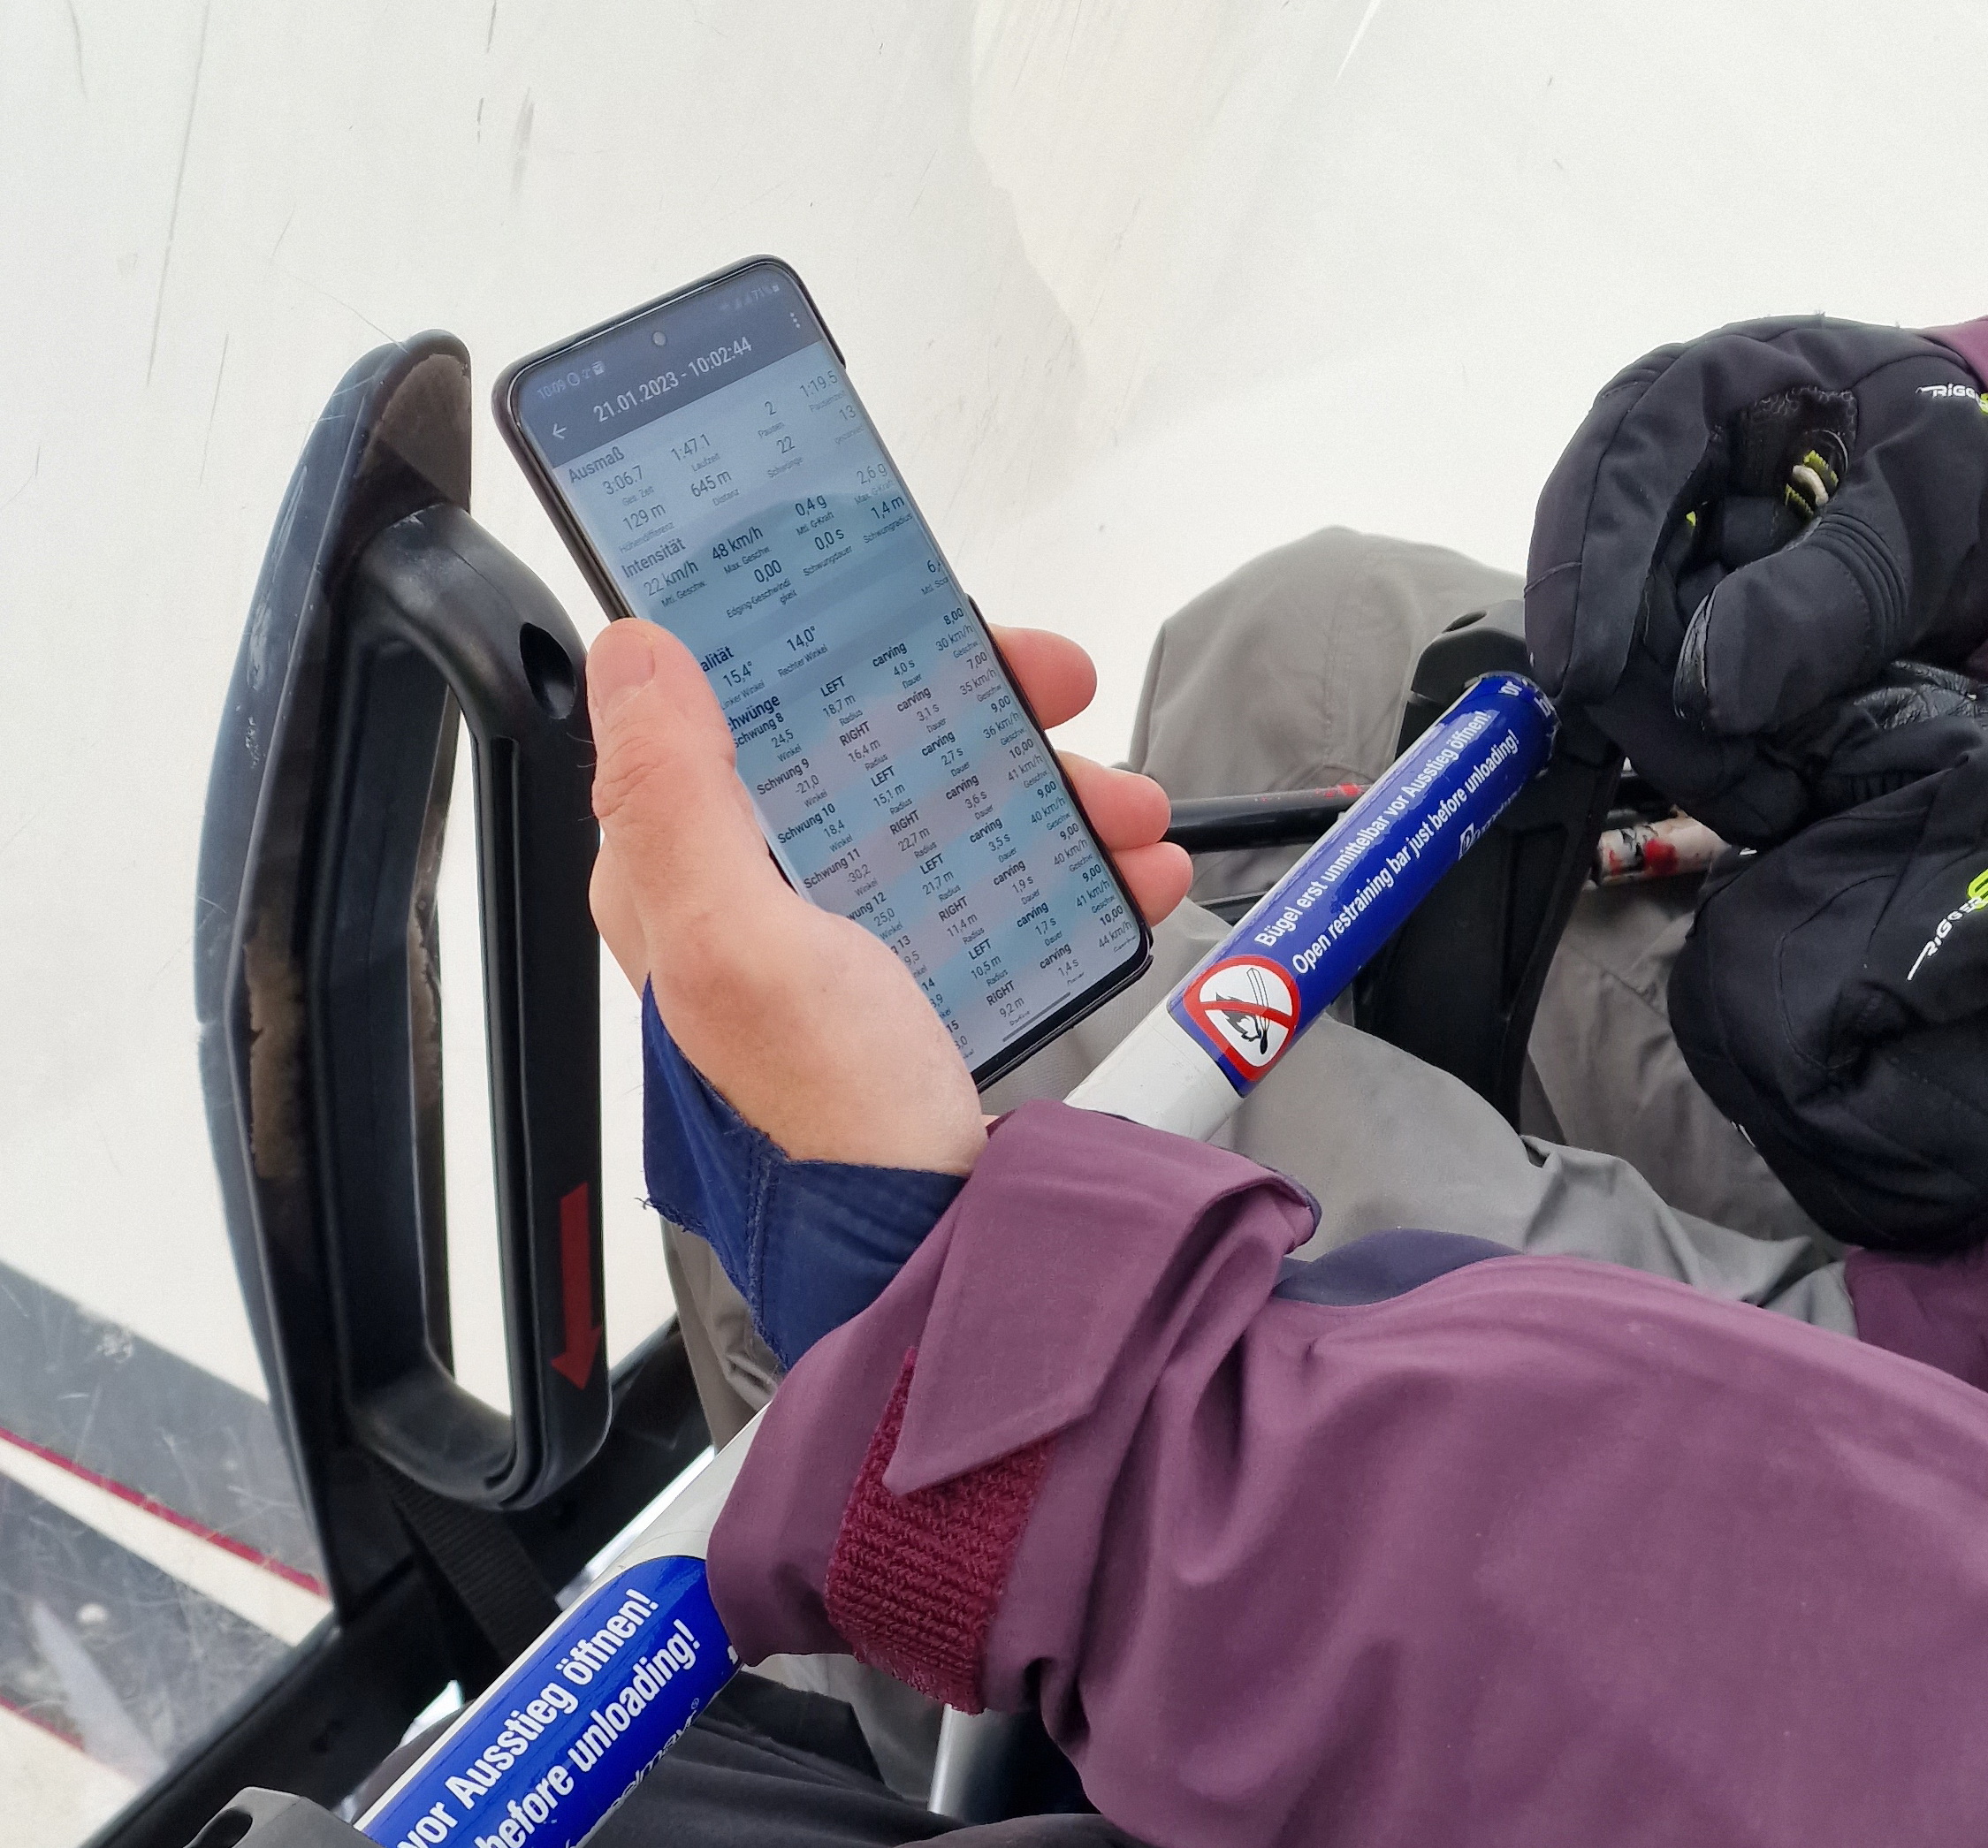 Mit dem Connected Boot auf der Piste: Erster Check der Ergebnisse am Smartphone